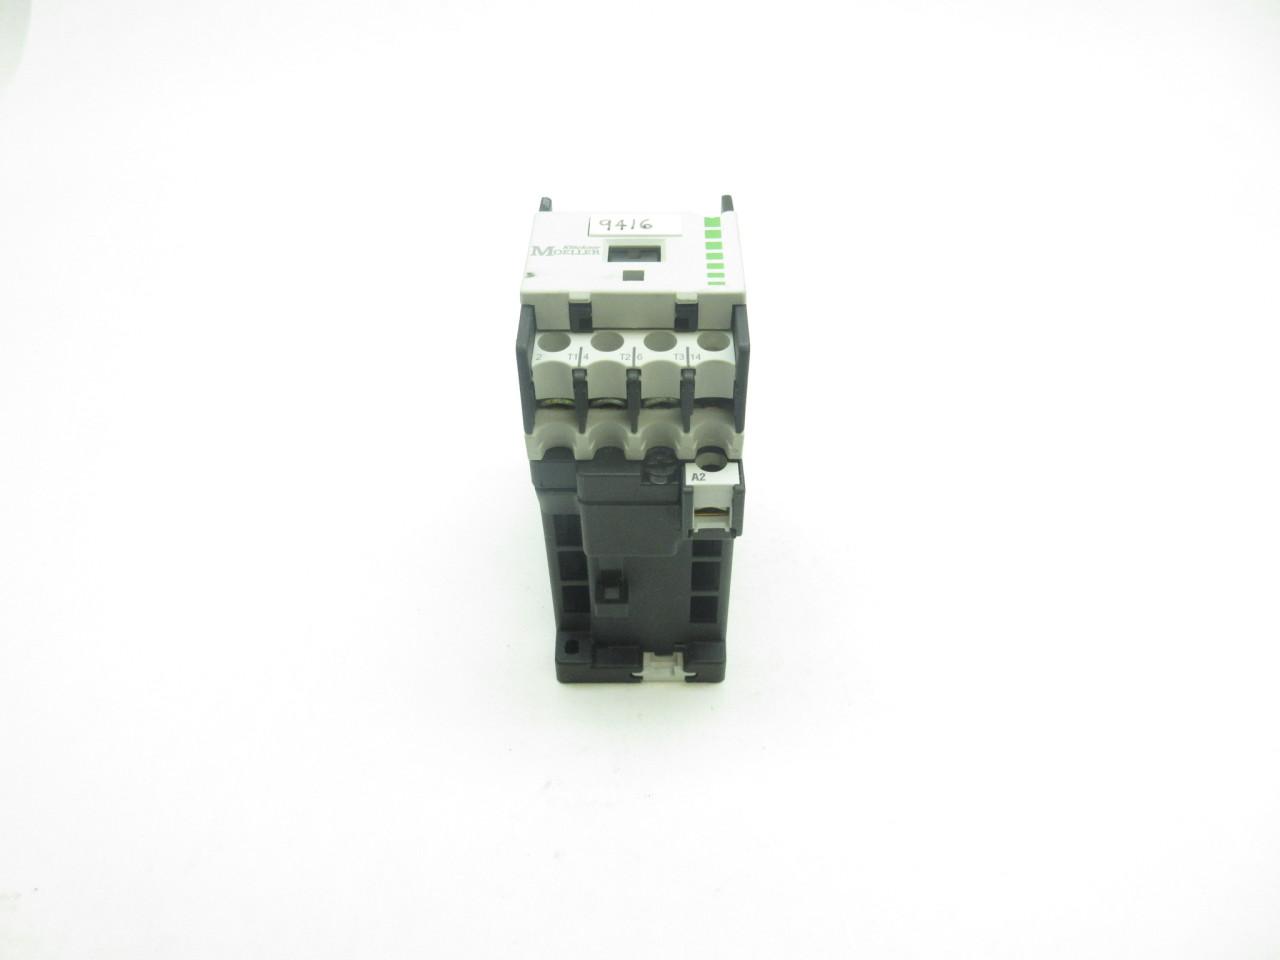 Klockner Moeller DIL00M-G 20a Amp 24v-dc 5hp Ac Contactor 